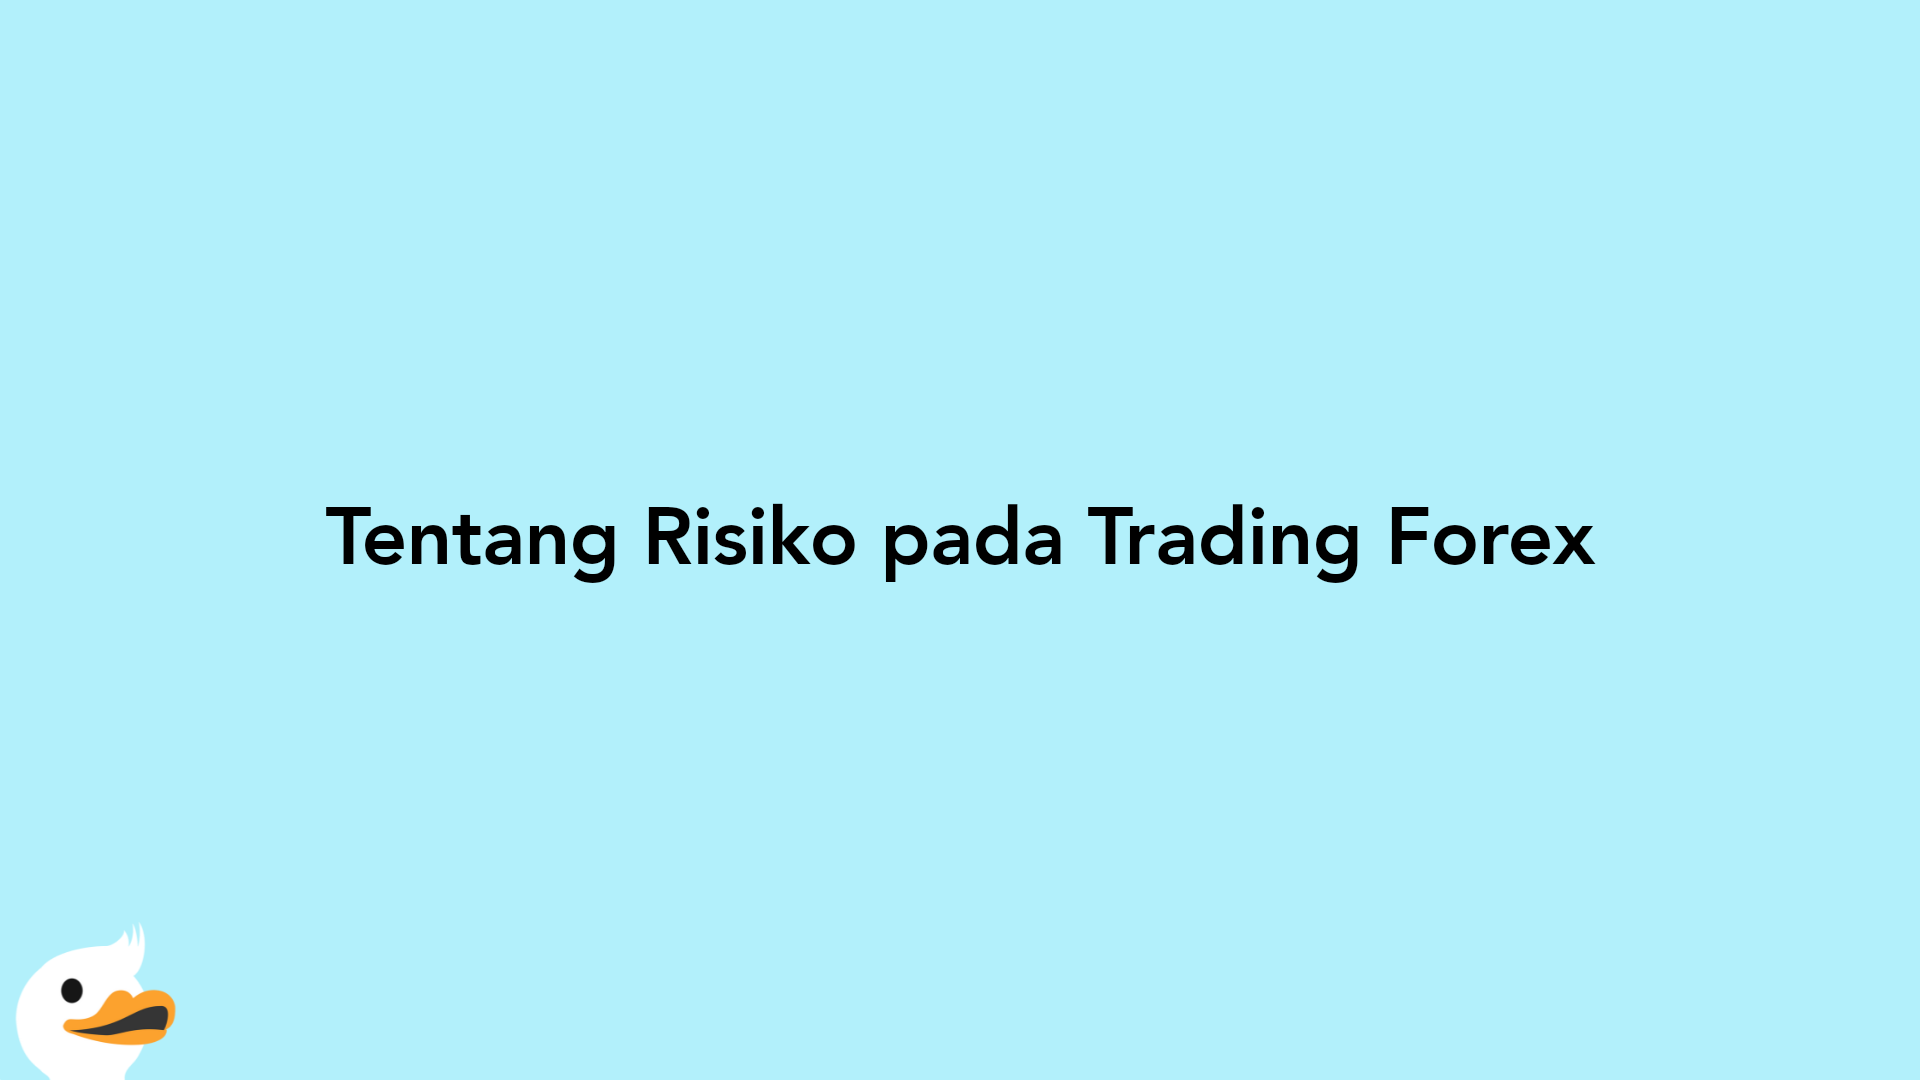 Tentang Risiko pada Trading Forex